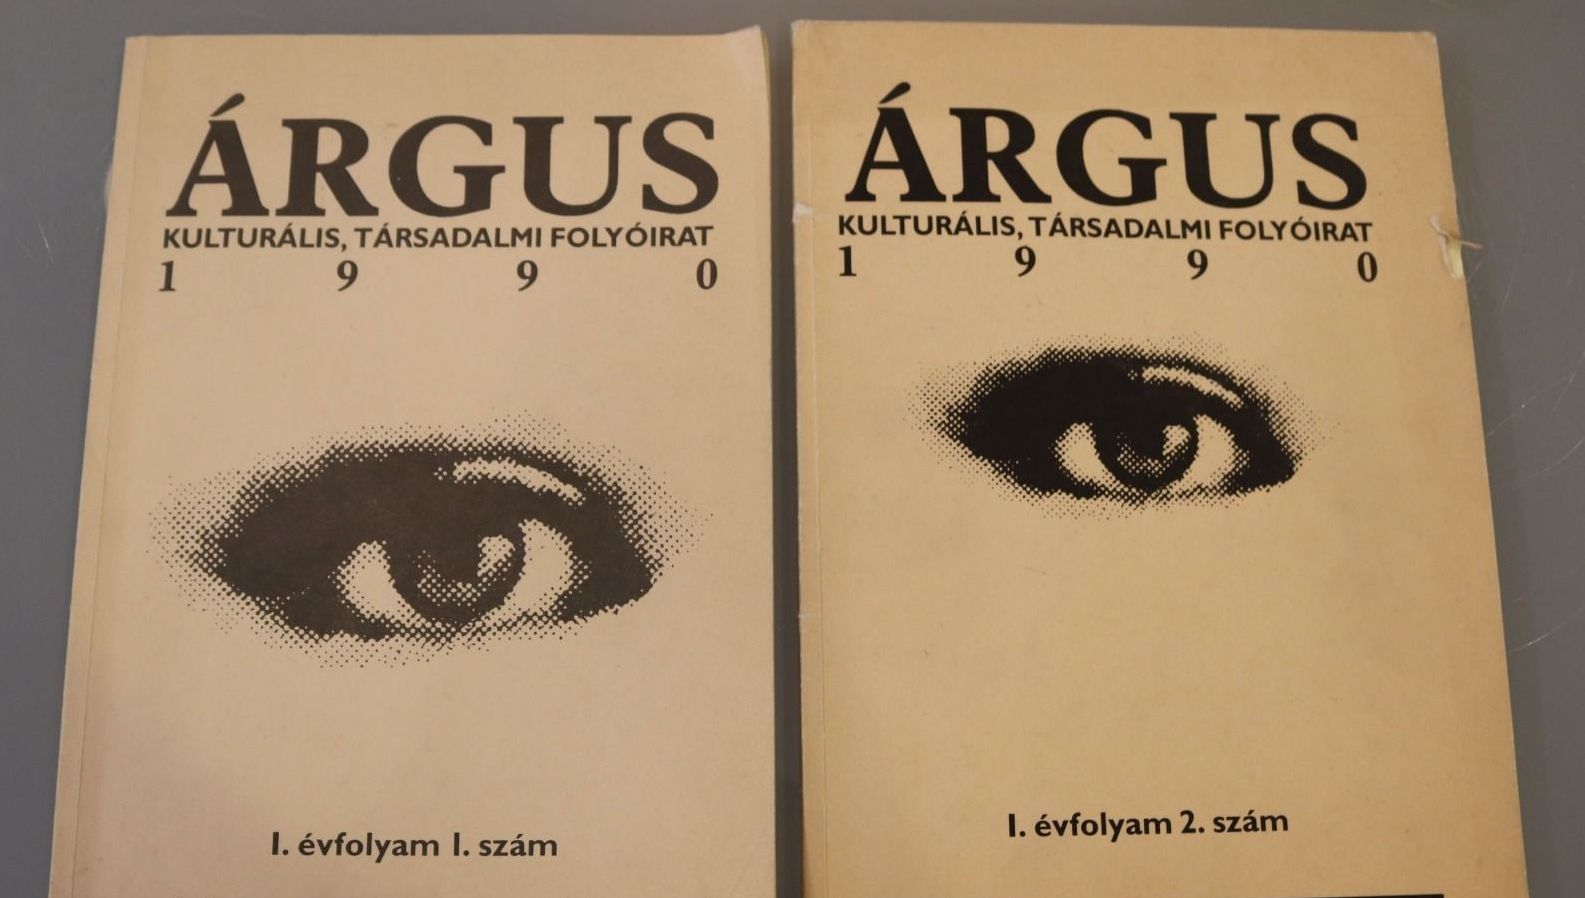 Volt egyszer egy Árgus – a VMK Olvasótermében folytatódik a Nyitott könyvek programsorozat